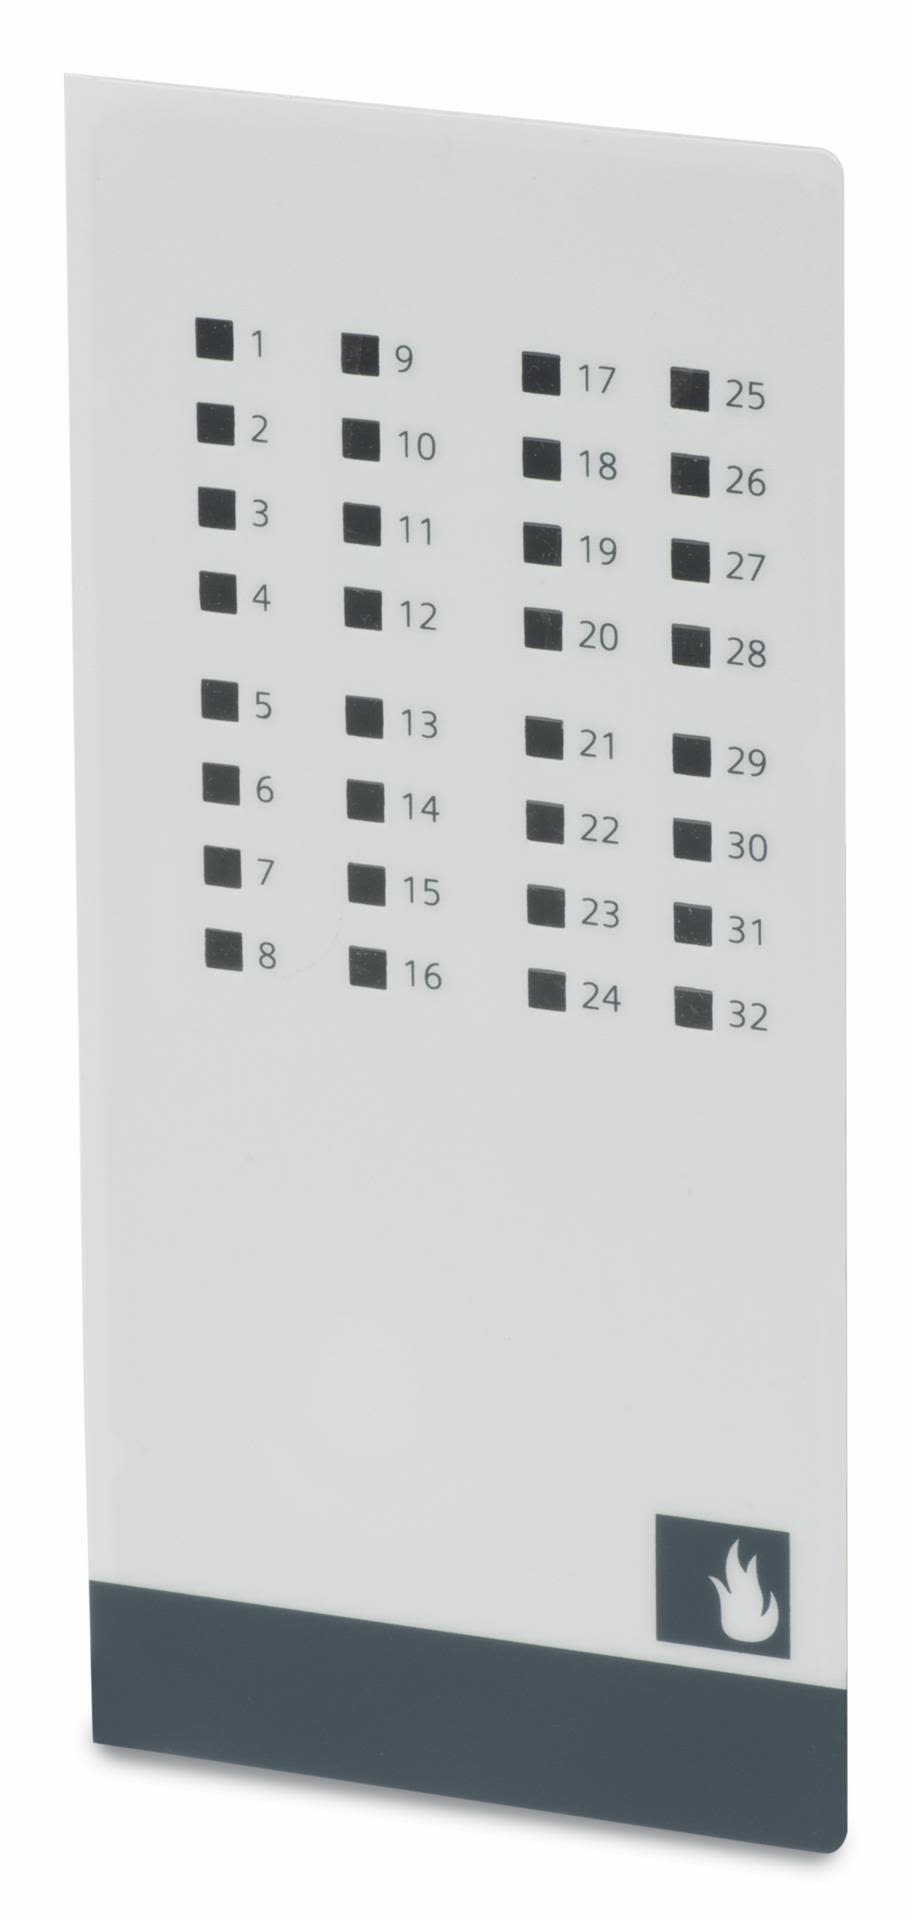 Indicateur LED, Siemens, S54433-B118-A1, 32 LEDs, Montage panneau